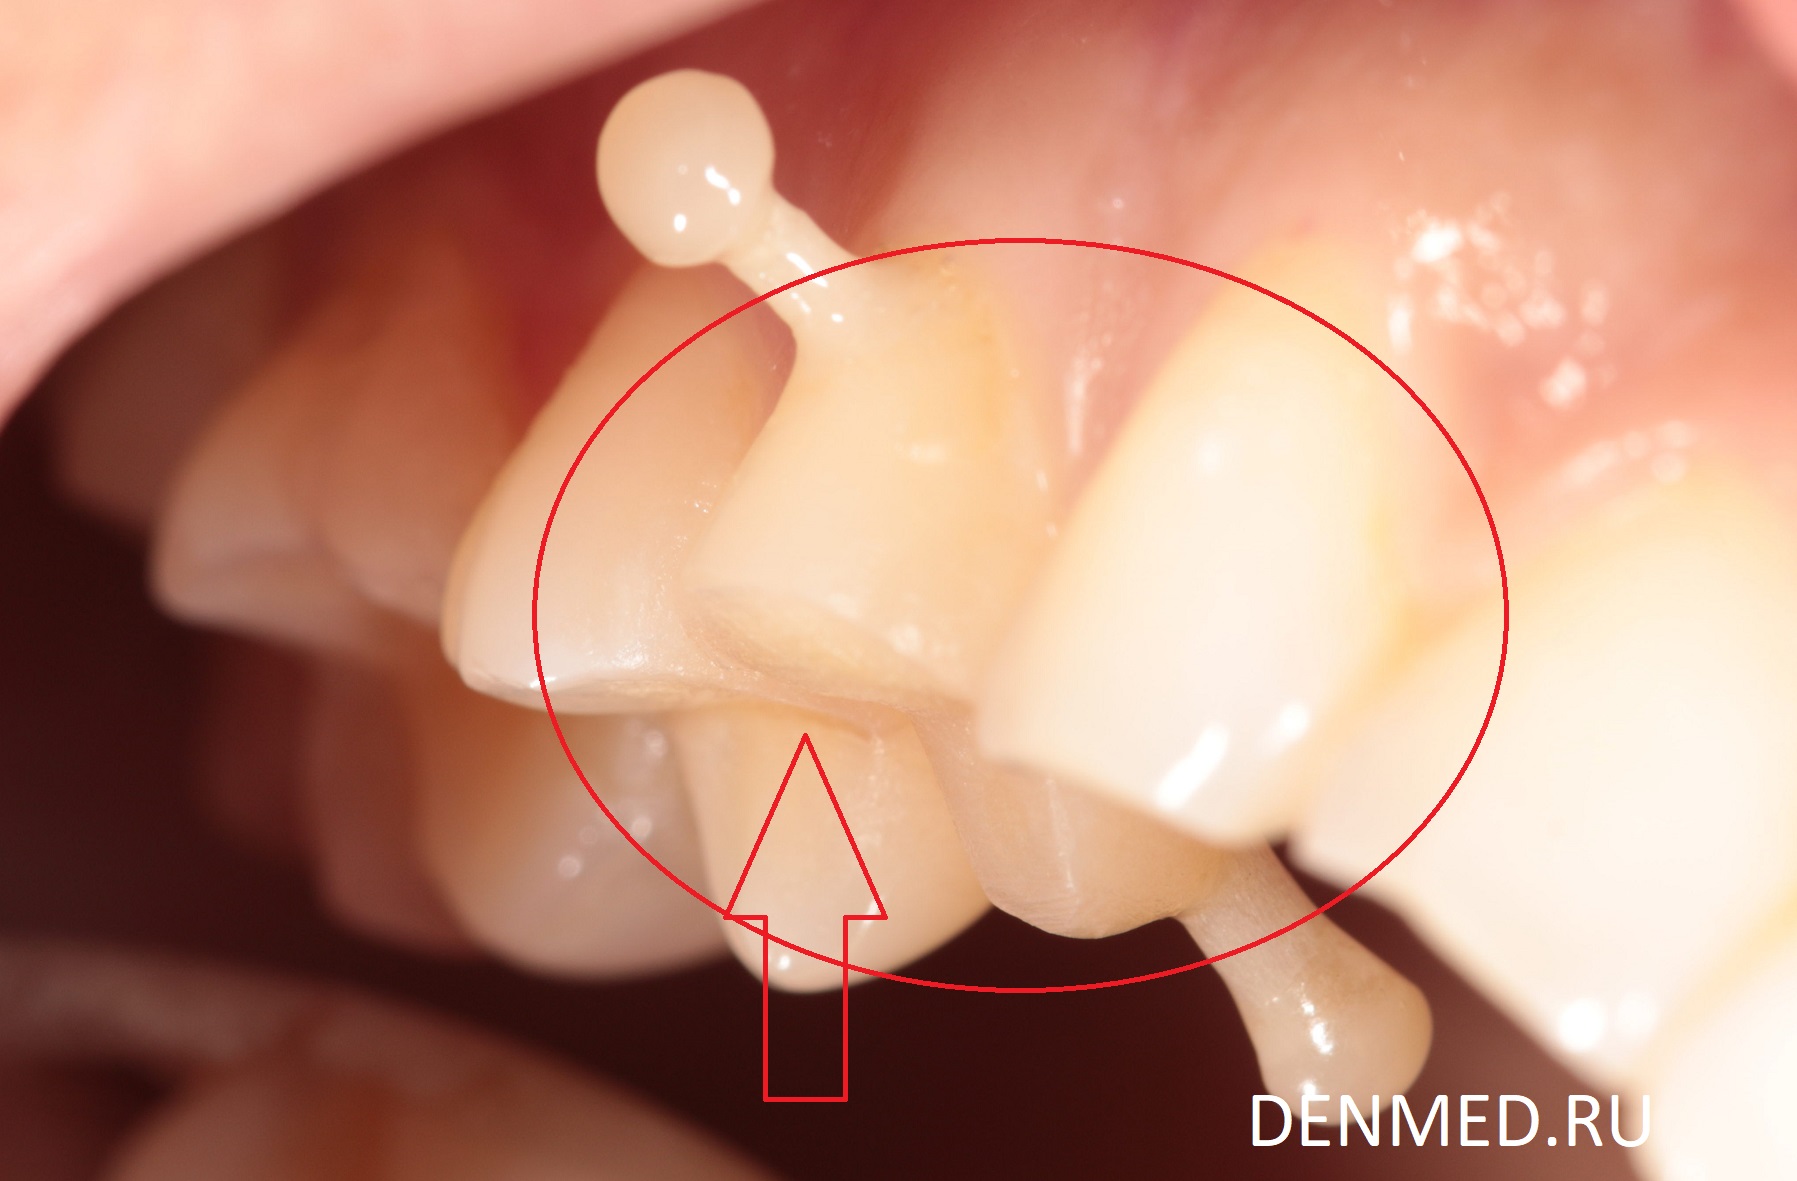 Этапы перемещения зуба, в промежуточных визитах в клинику ДенМед